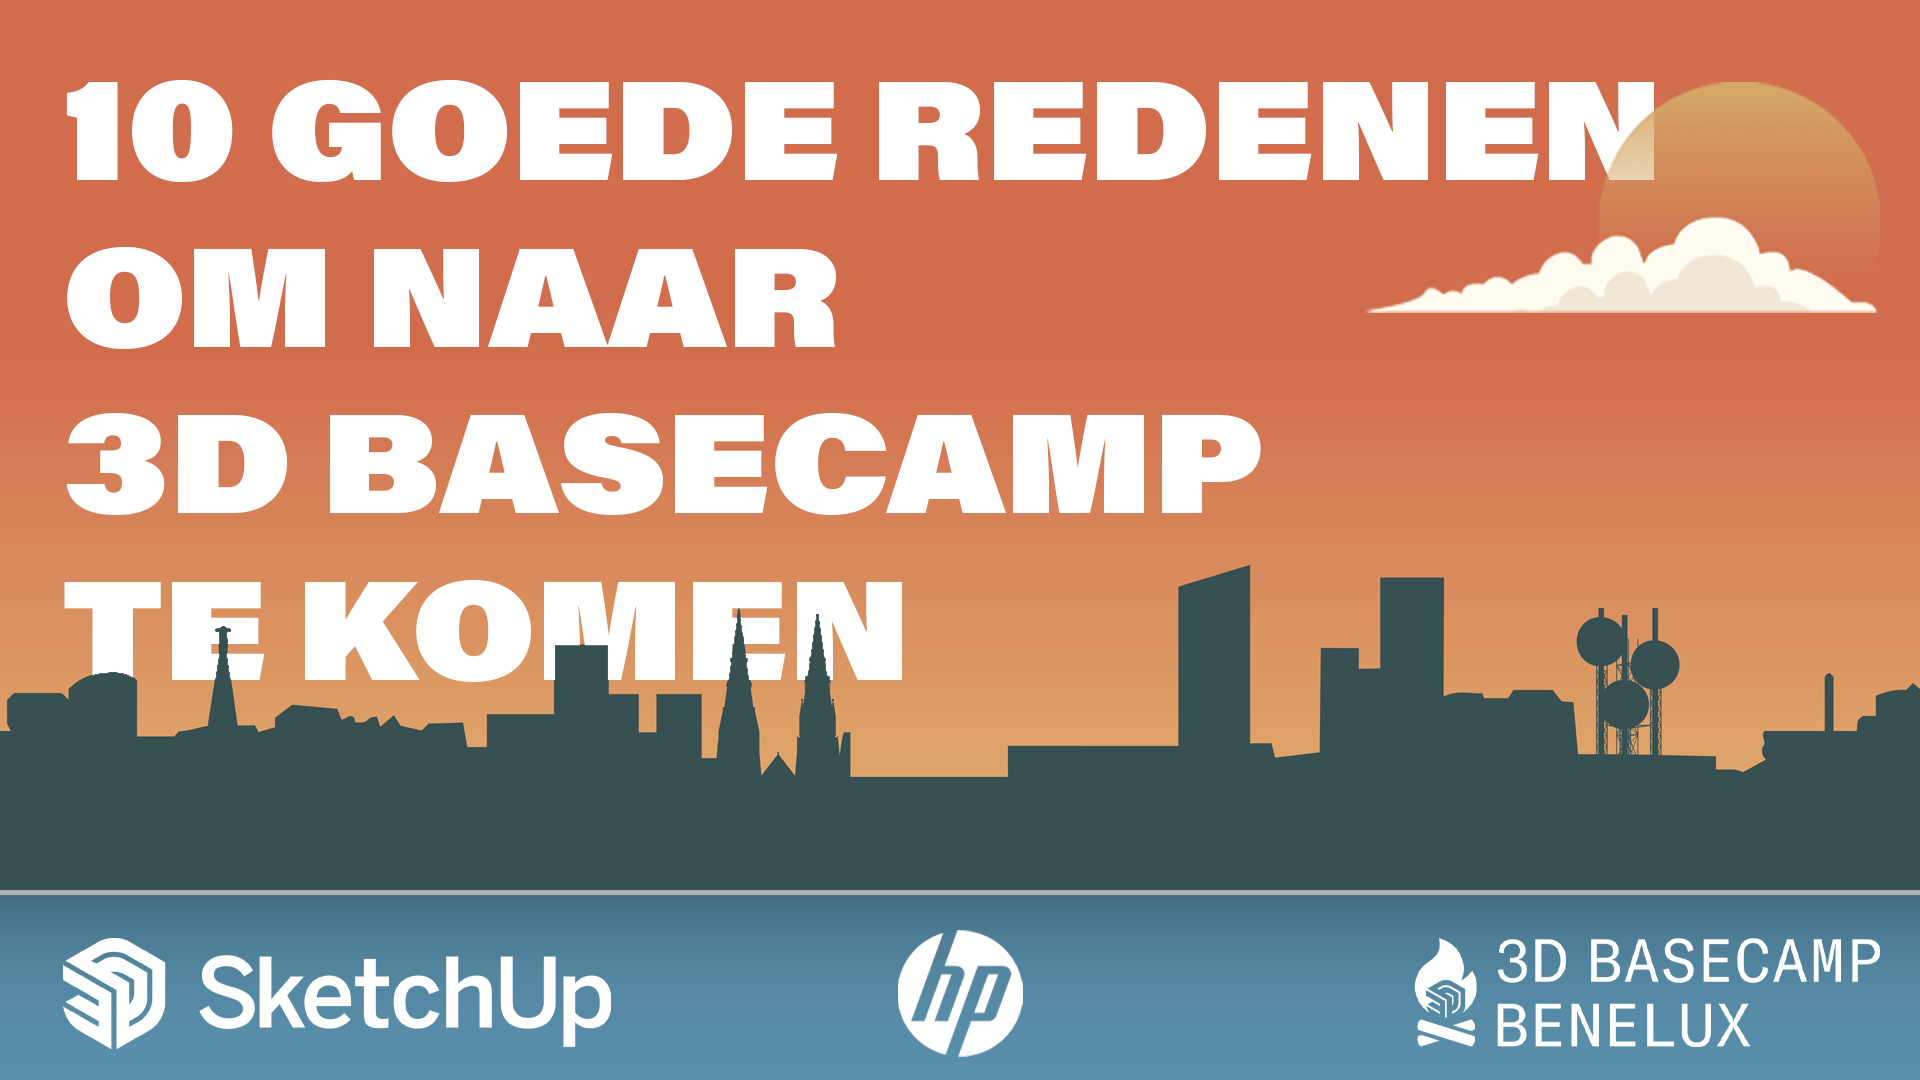 10 goede redenen om naar 3D Basecamp Benelux te komen